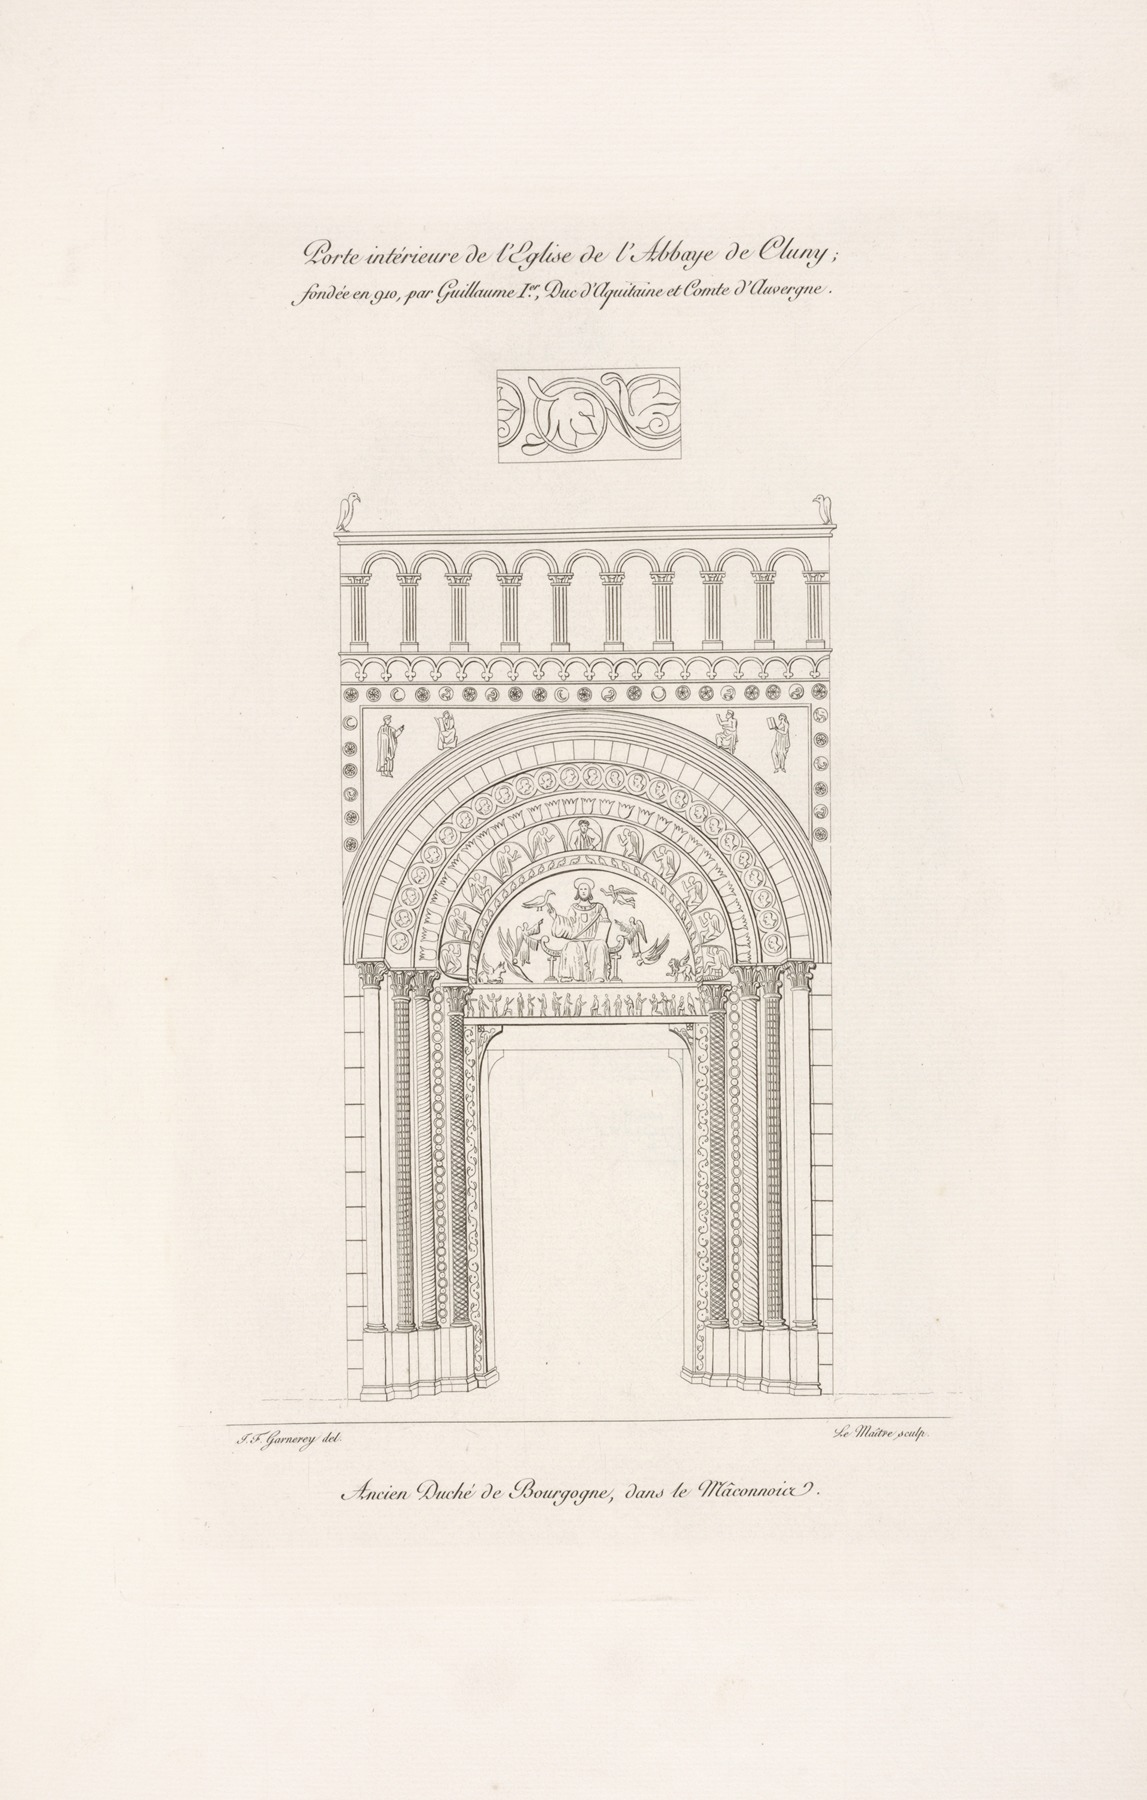 Nicolas Xavier Willemin - Porte intérieure de l’église de l’abbaye de Cluny; fondée en 910, par Guillaume Ier., duc d’Aquitaine et comte d’Auvergne.